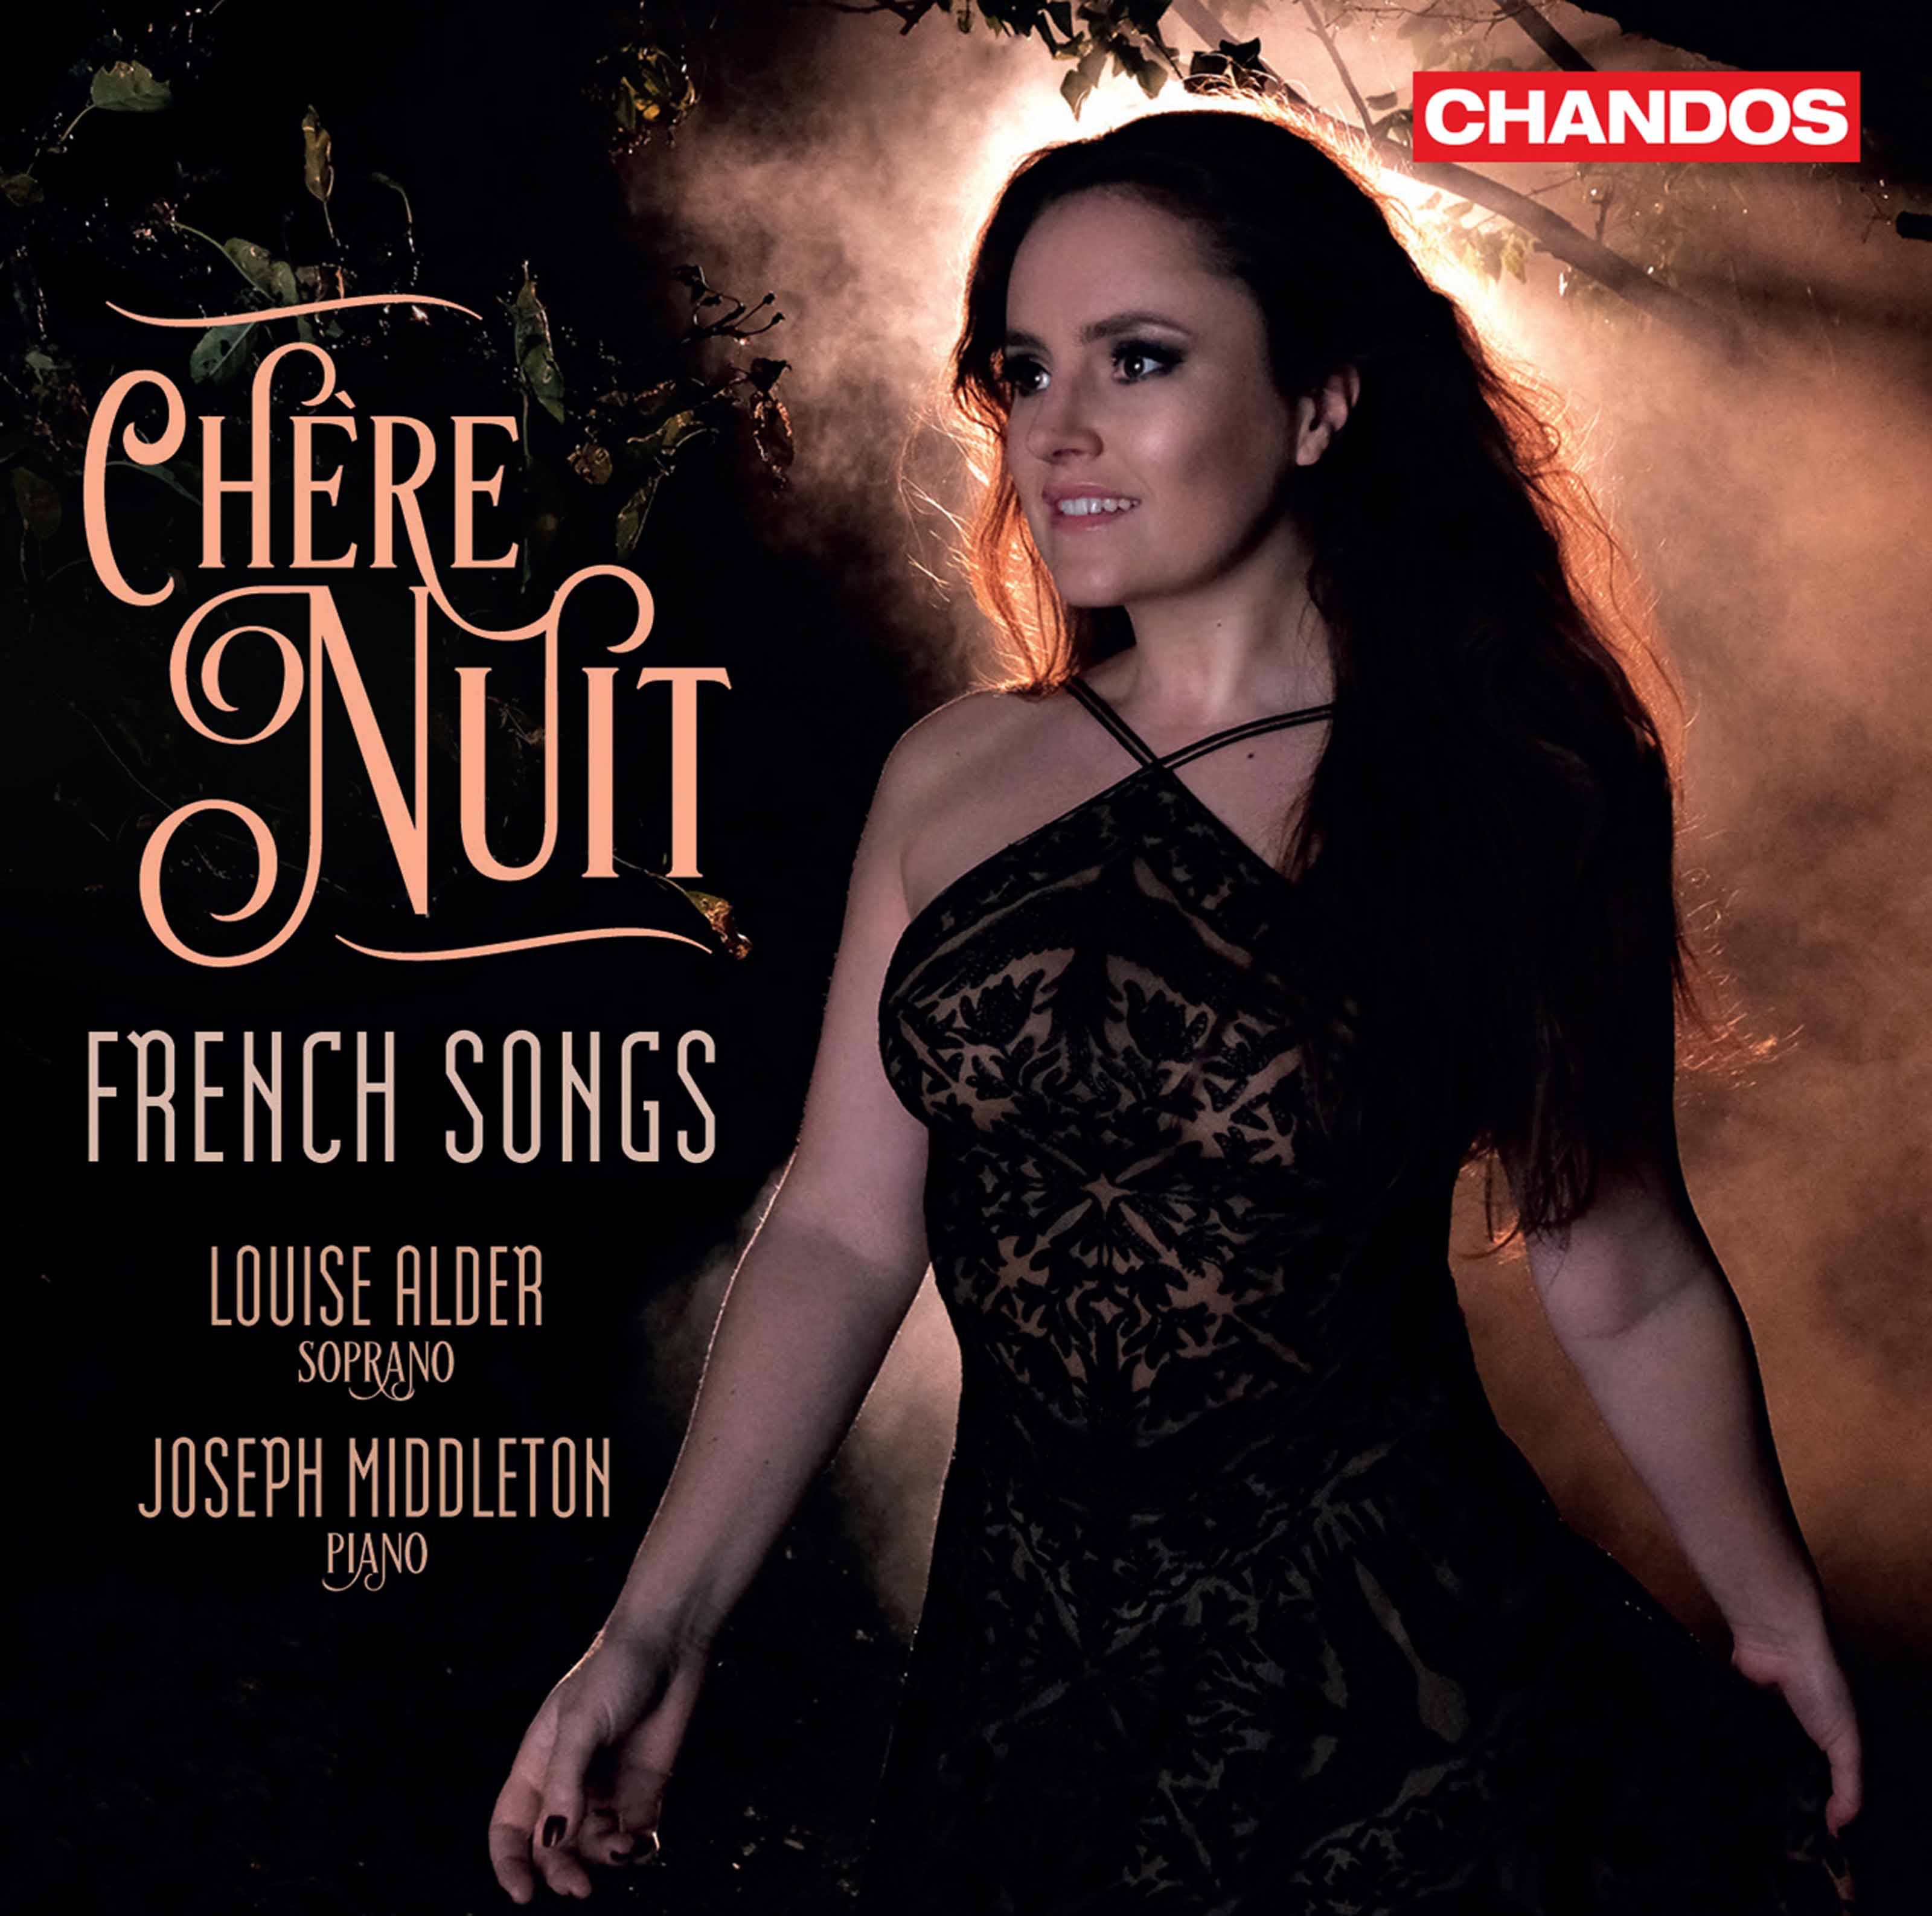 Joseph Middleton & Louise Alder - Chere nuit: French Songs (2021) [FLAC 24bit/96kHz]